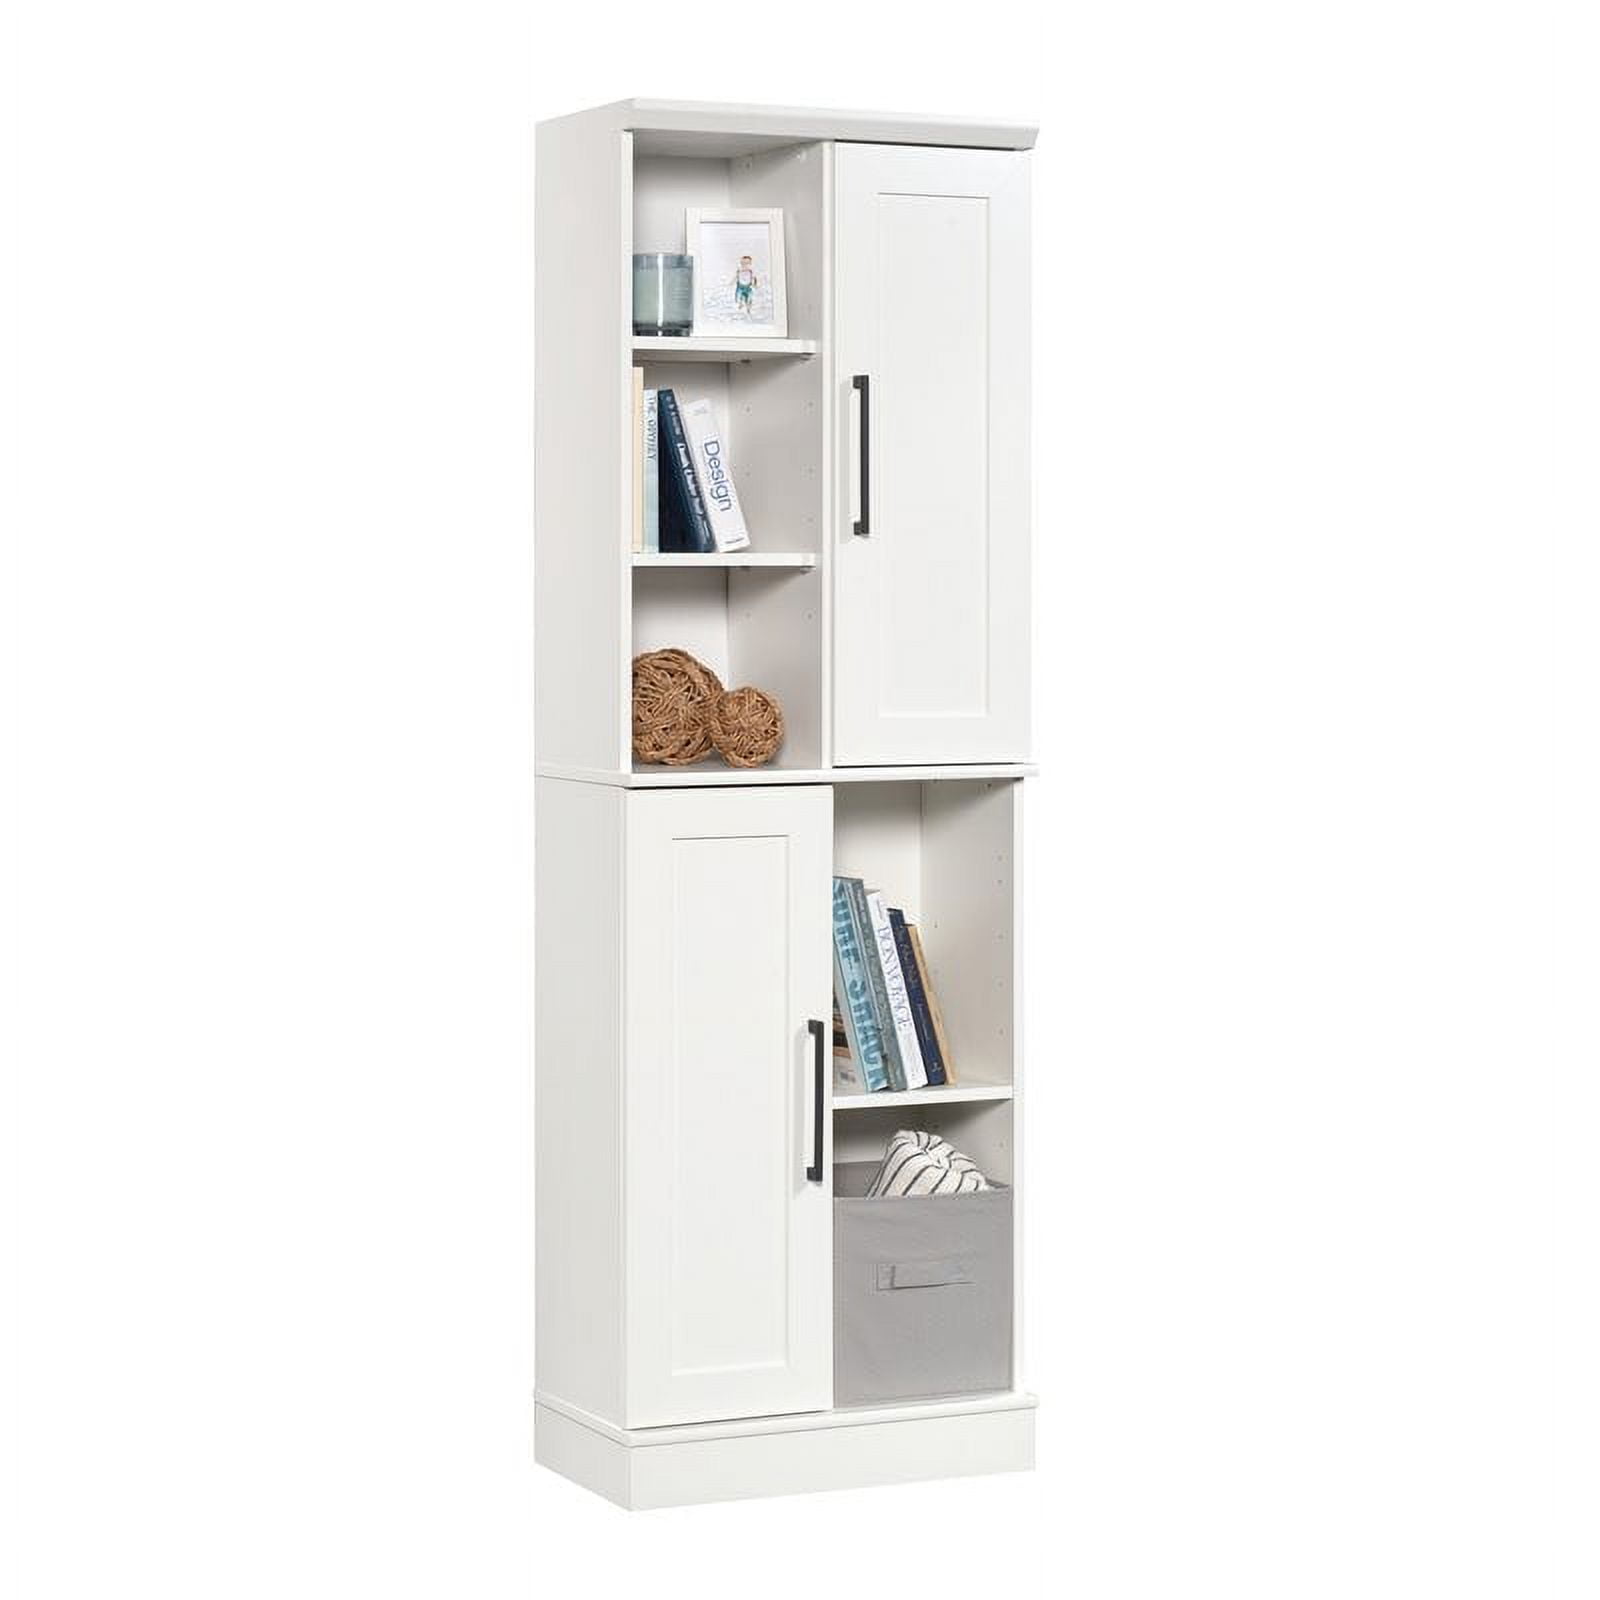 Sauder HomePlus 2-Door Kitchen Pantry Cabinet in Soft White, 1 - City Market